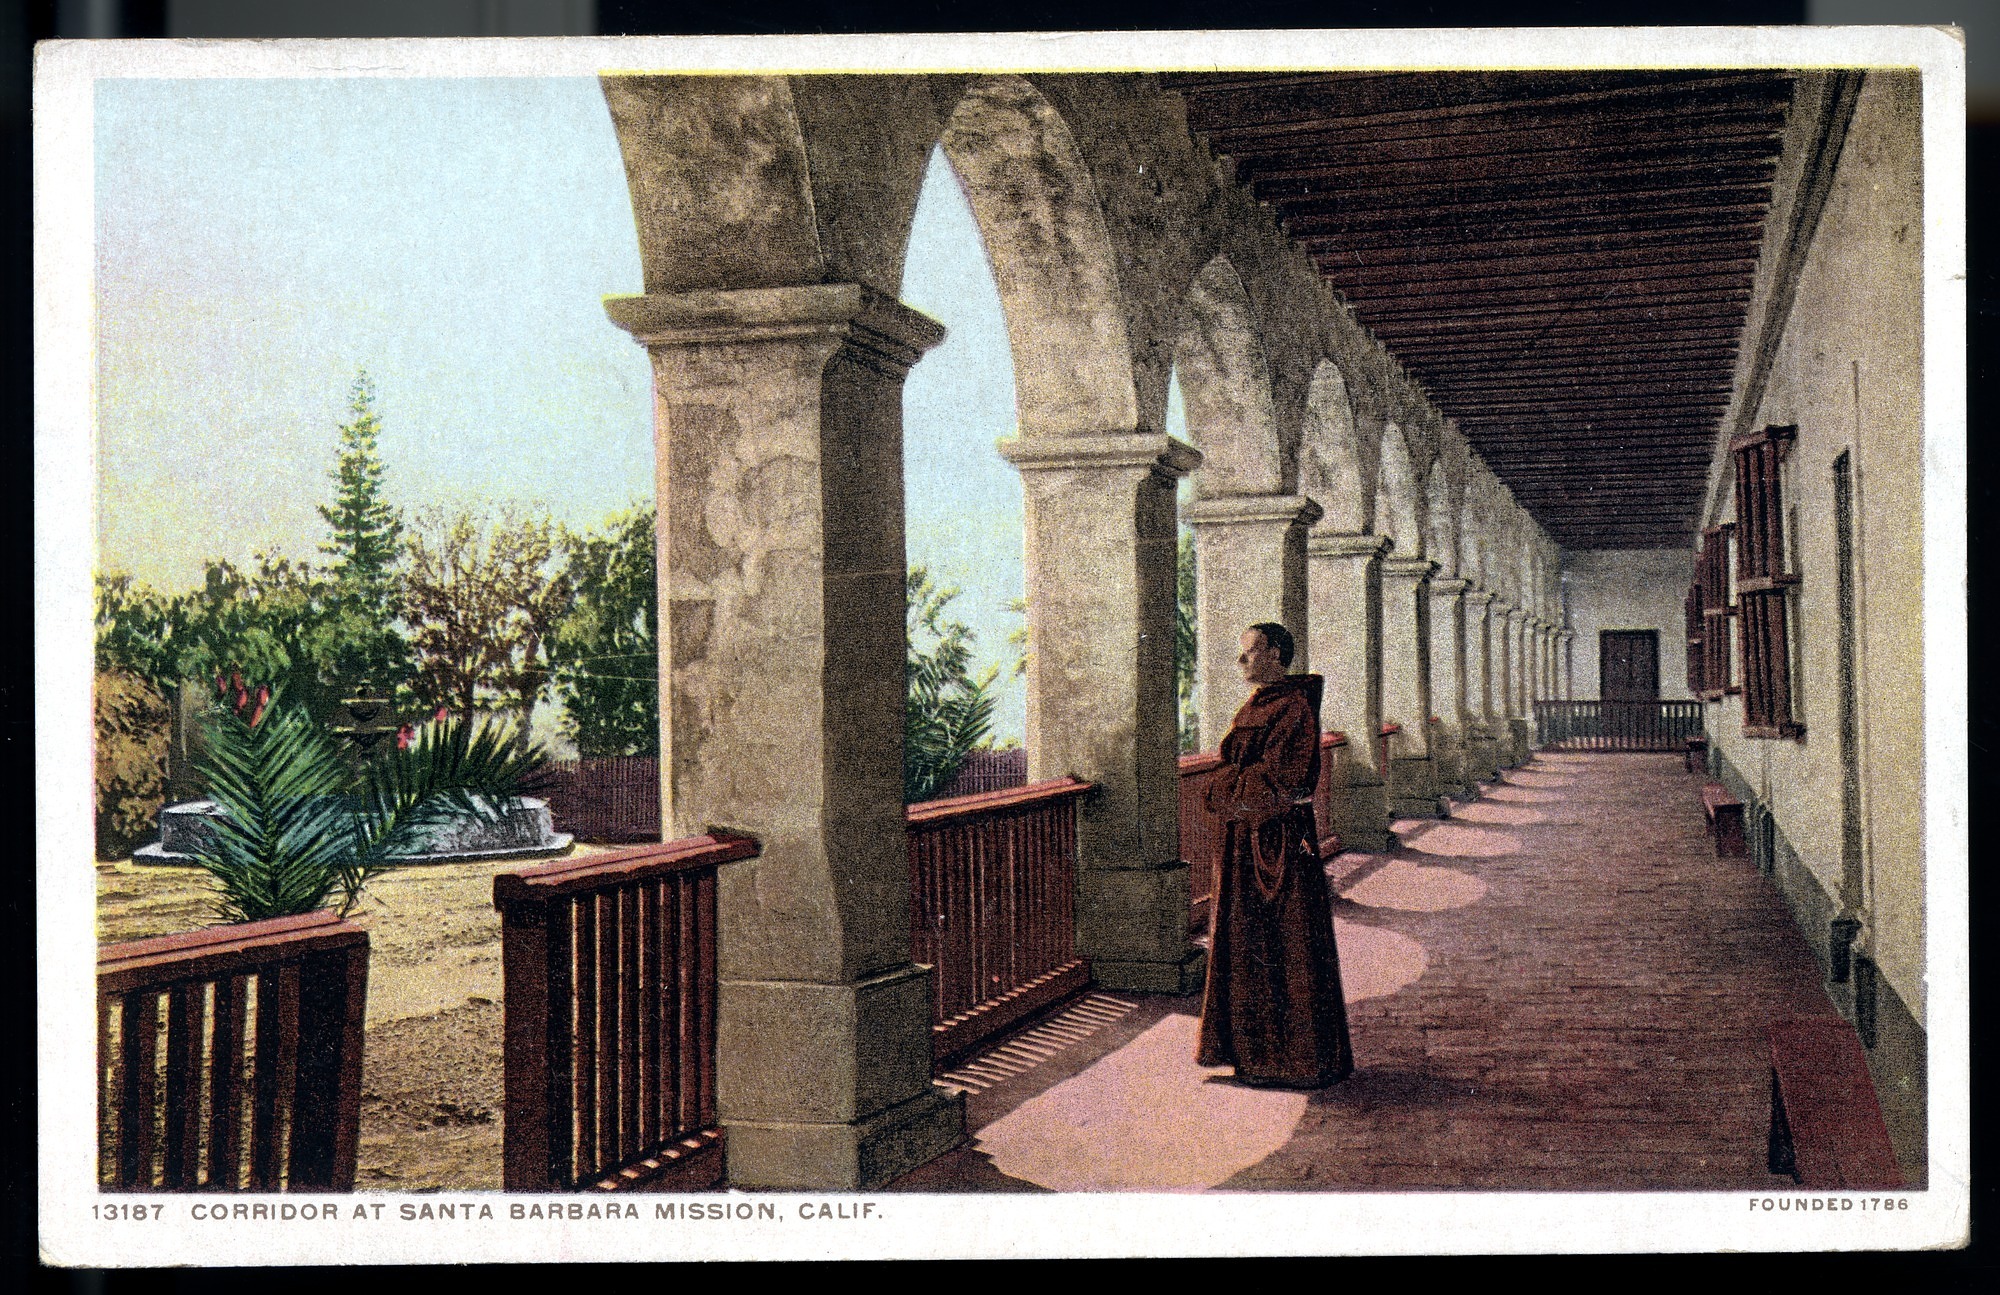 Postcard 38 – Corridor at Santa Barbara Mission, Calif. Founded 1786. Detroit Publishing Company. ca 1910. NMAH 1986.0639.2039.